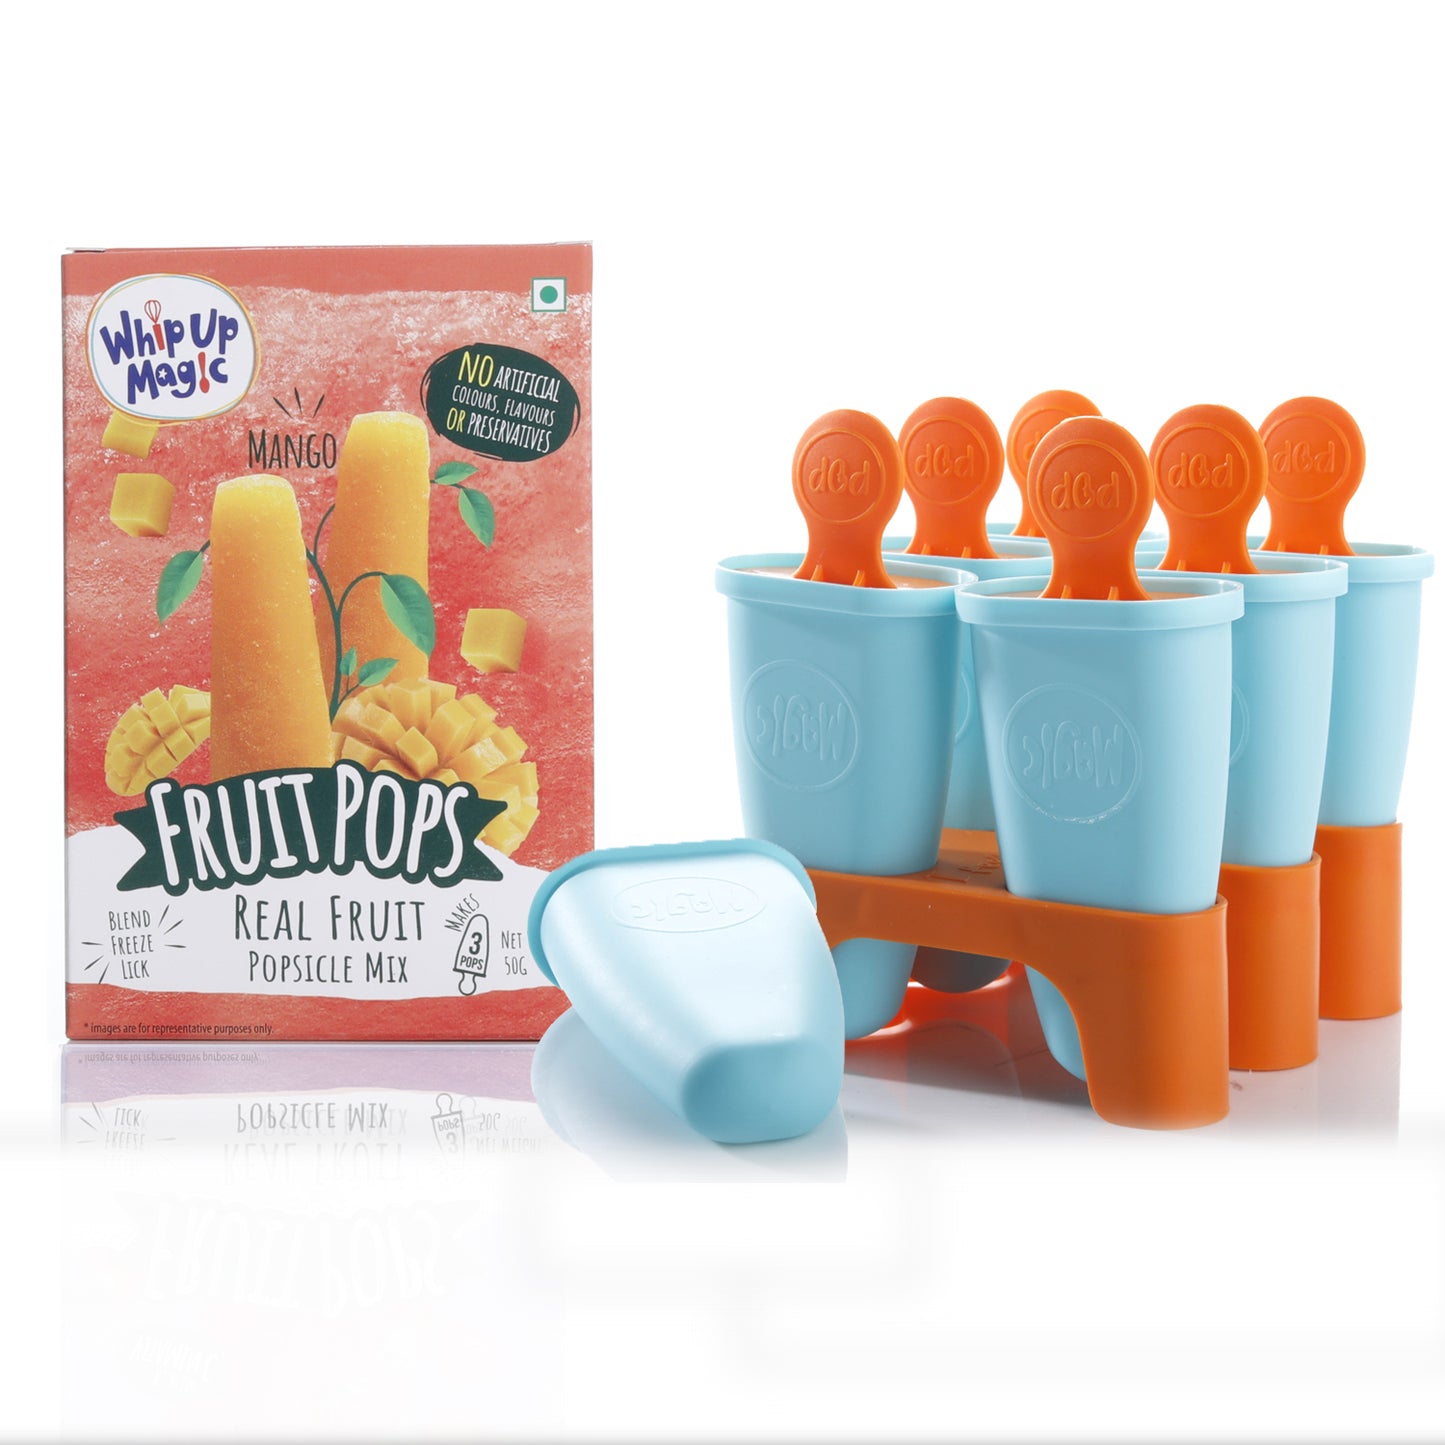 Starter Pop Kit - makes 3 pops WhipUpMagic